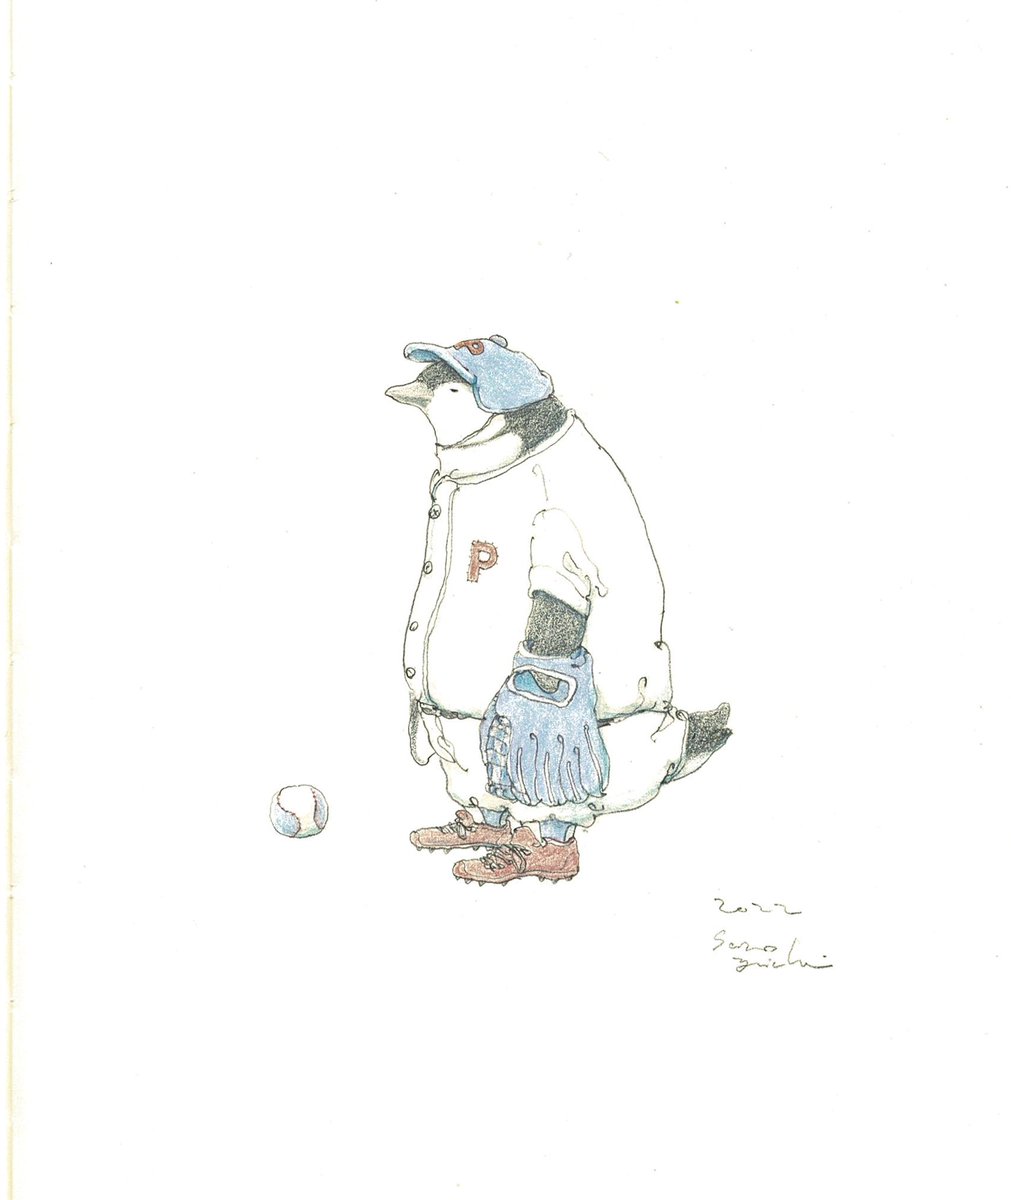 「ほけつペンギン。 」|sano yuichiのイラスト